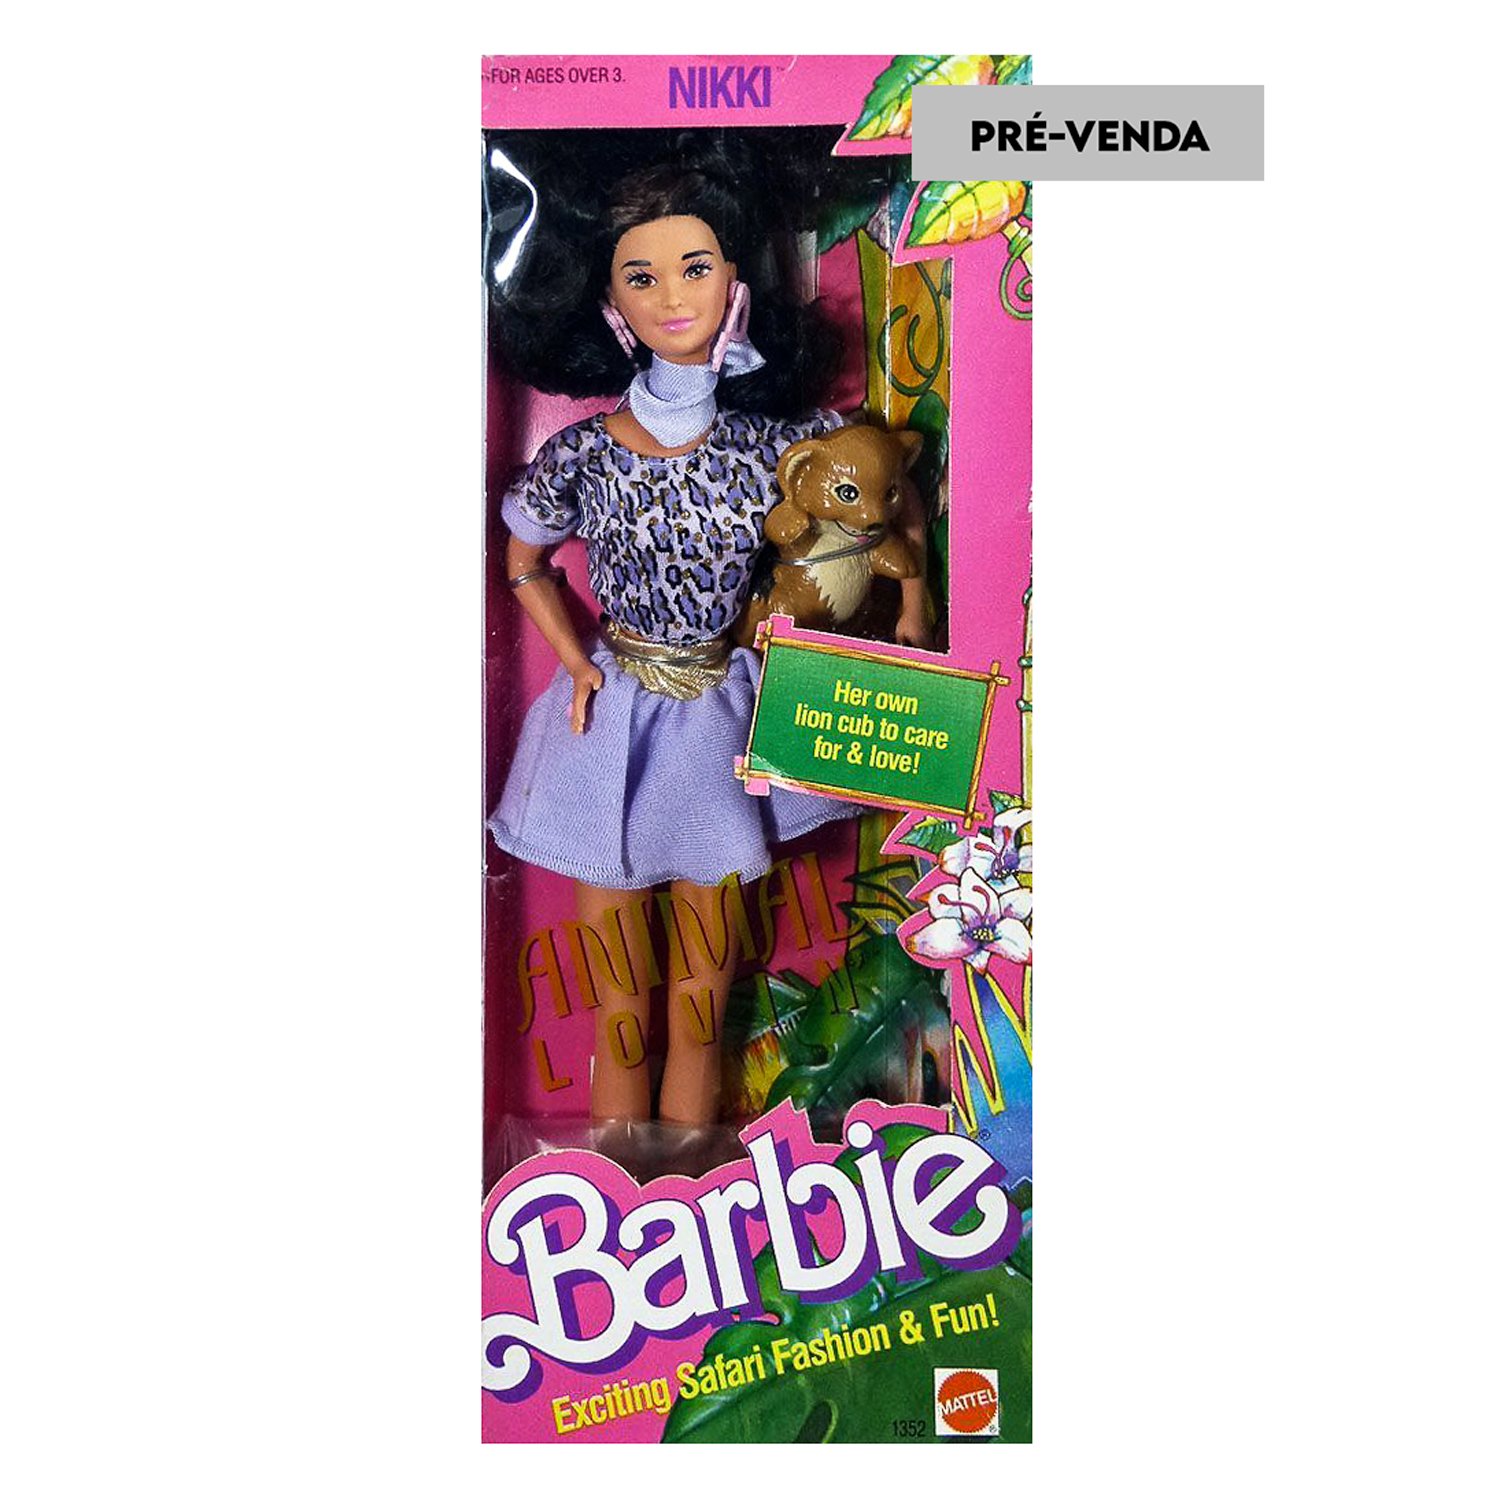 Estampa Barbie Friends adulto (por encomenda)